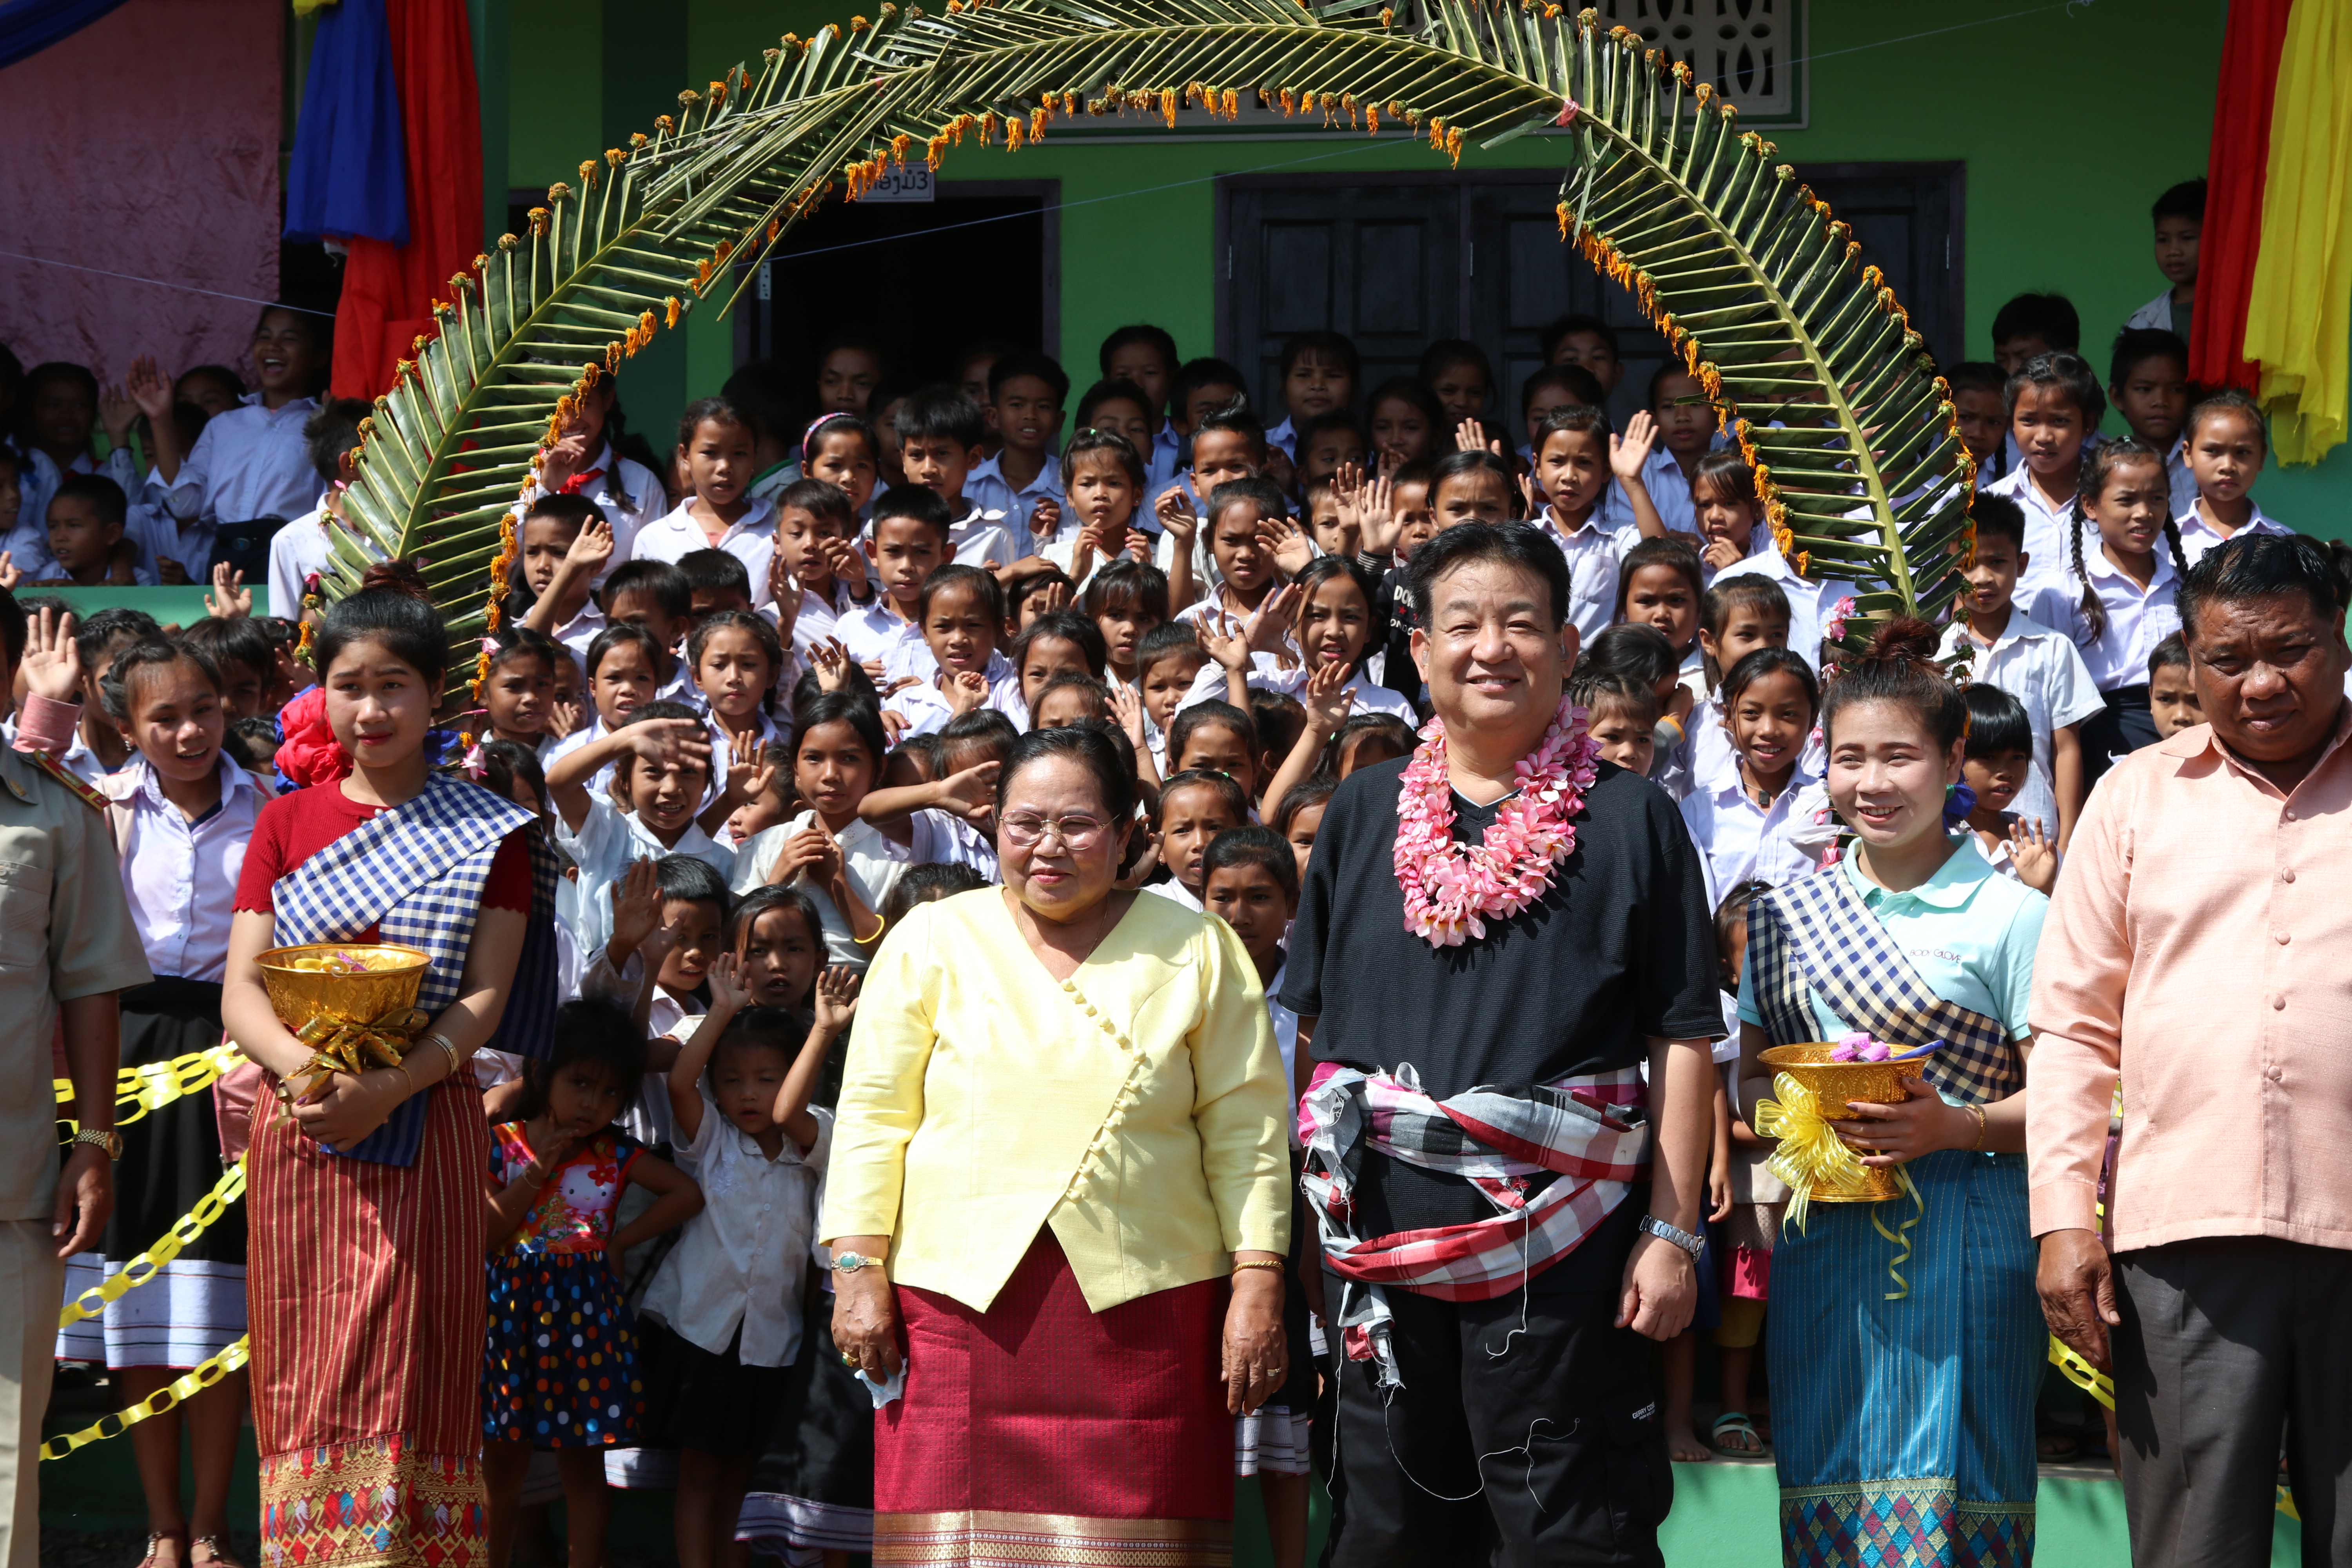 フォーサイトはCSR活動として、東南アジア（ラオス、ベトナム、タイ）に１０の校舎建設を支援してきました。
写真は、ラオスに建設した校舎での開講式の模様です。